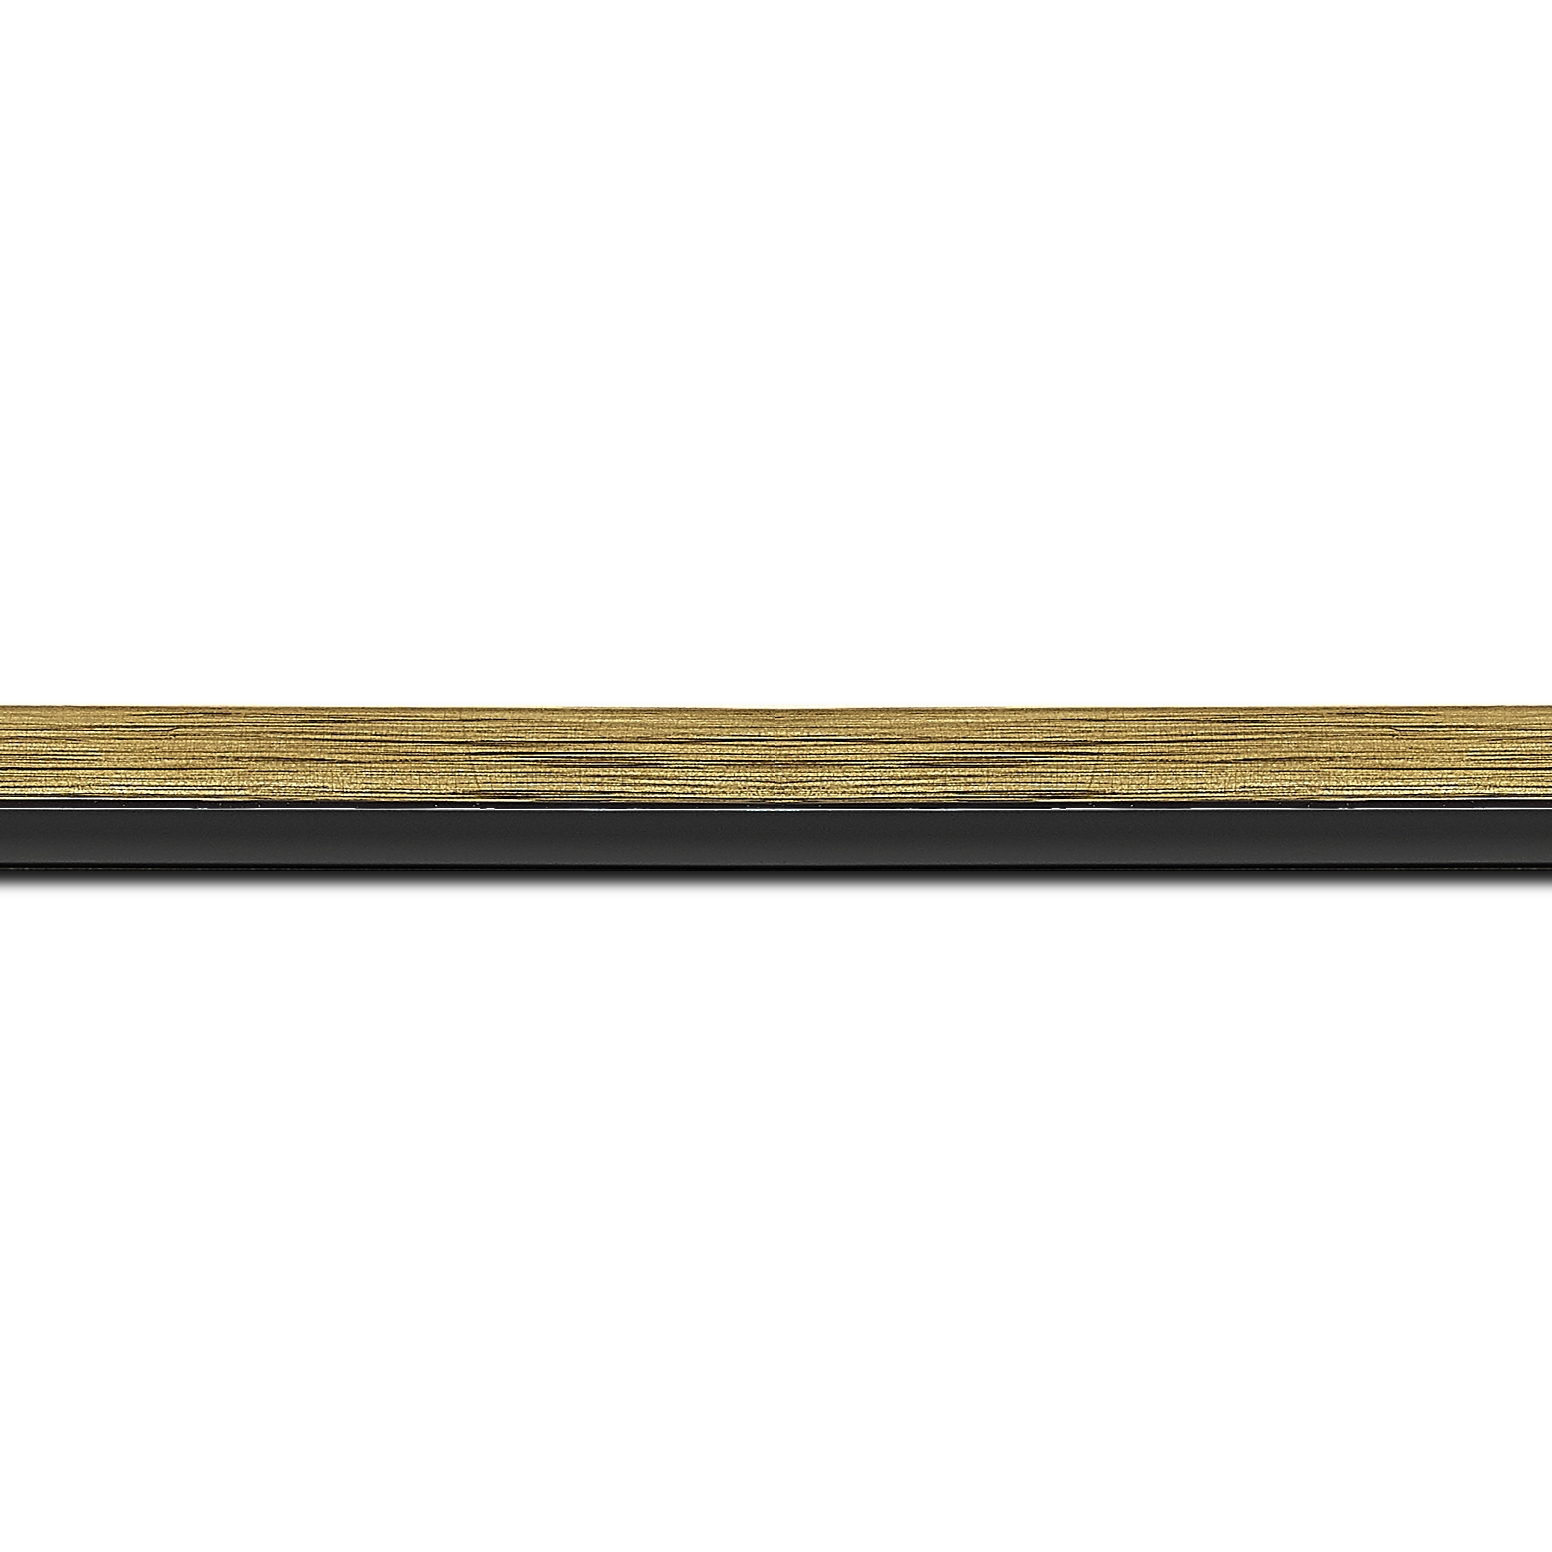 Baguette longueur 1.40m bois profil plat largeur 1.6cm couleur or contemporain filet noir en retrait de la face du cadre de 6mm assurant un effet très original